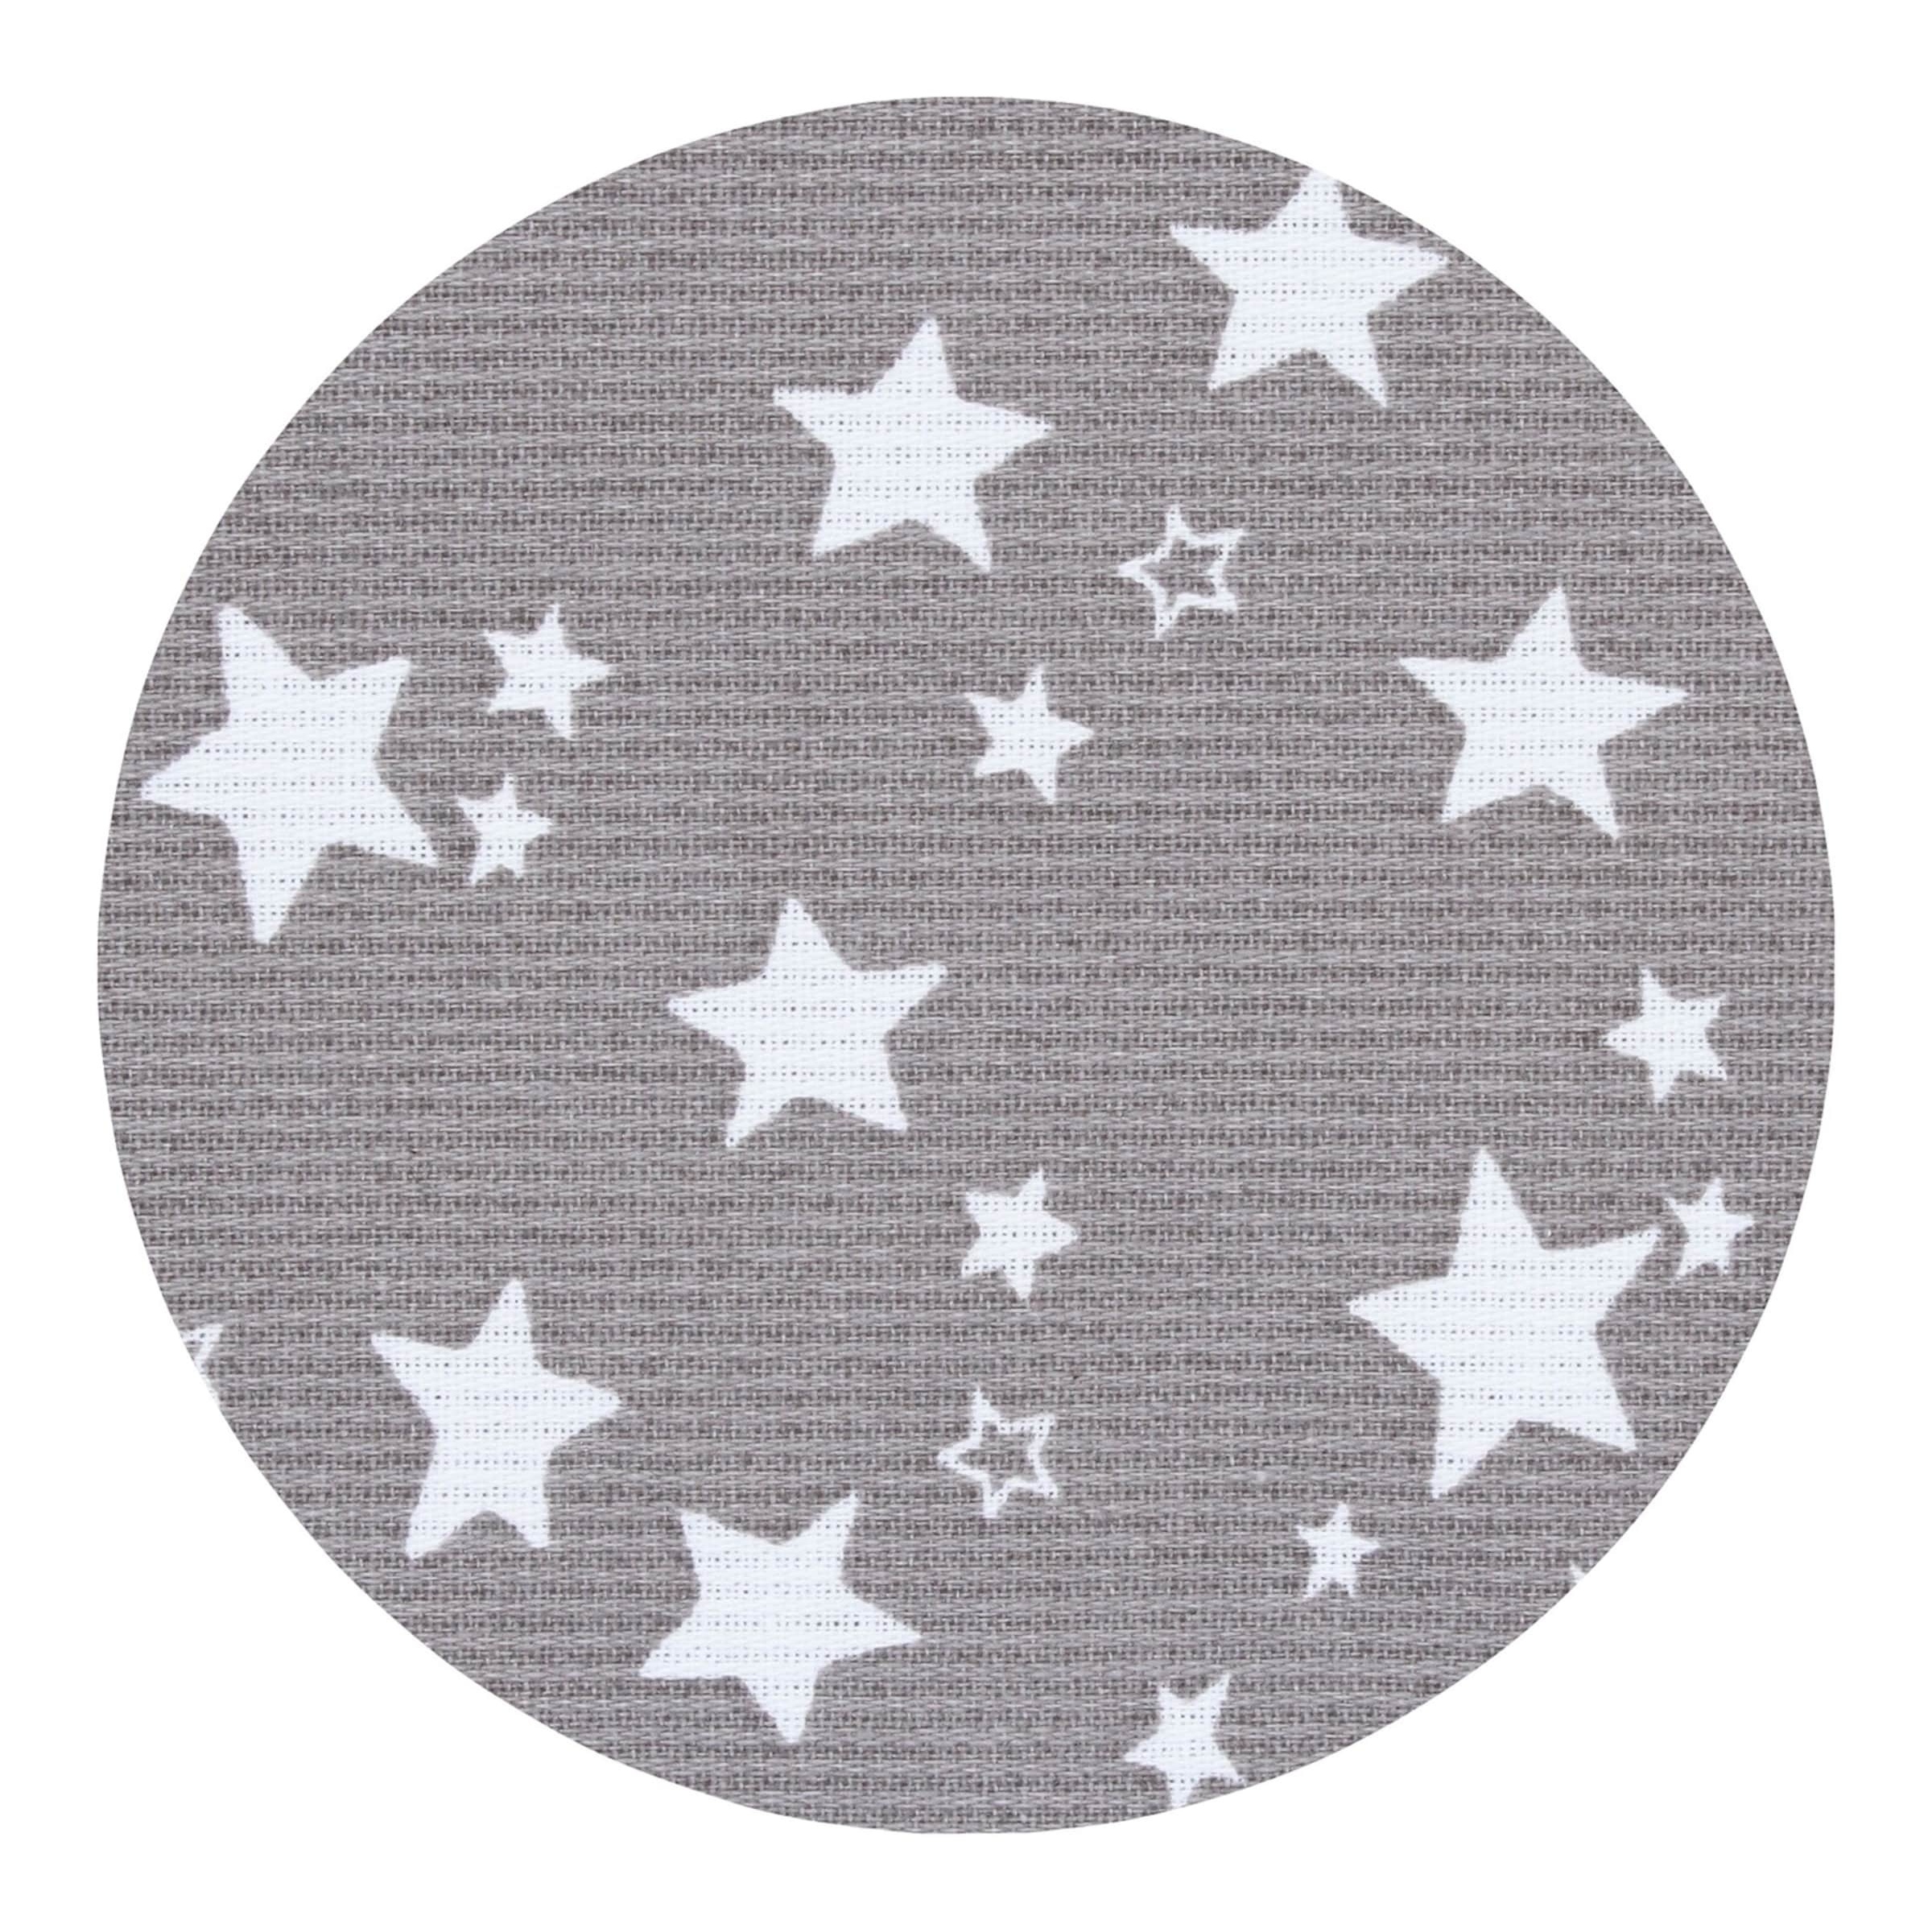 Bild von Himmel Piqué mit Band passend für Modelle Midi, Original, Maxi, Boxspring und Comfort Plus, Taupe Sterne weiß